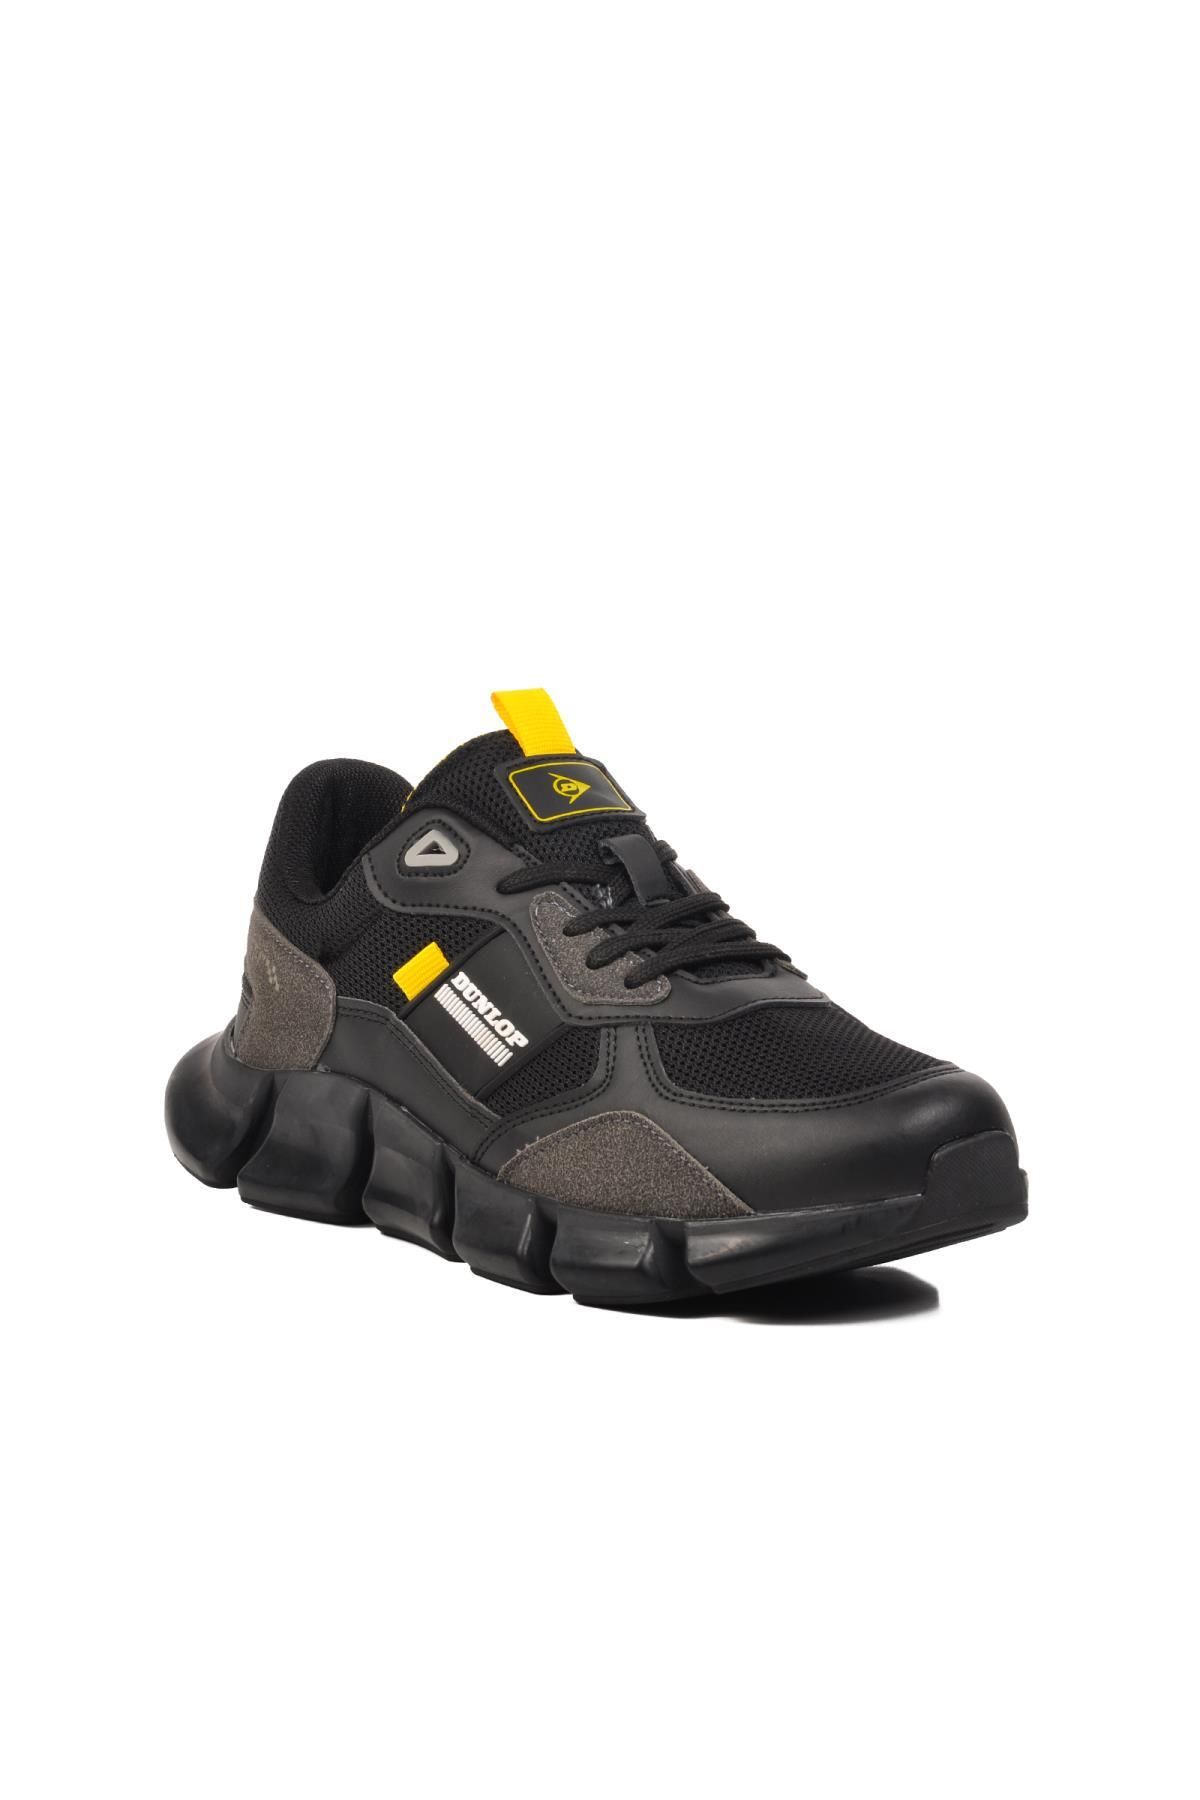 Dunlop Dnp-2340 Siyah-Sarı Erkek Spor Ayakkabı